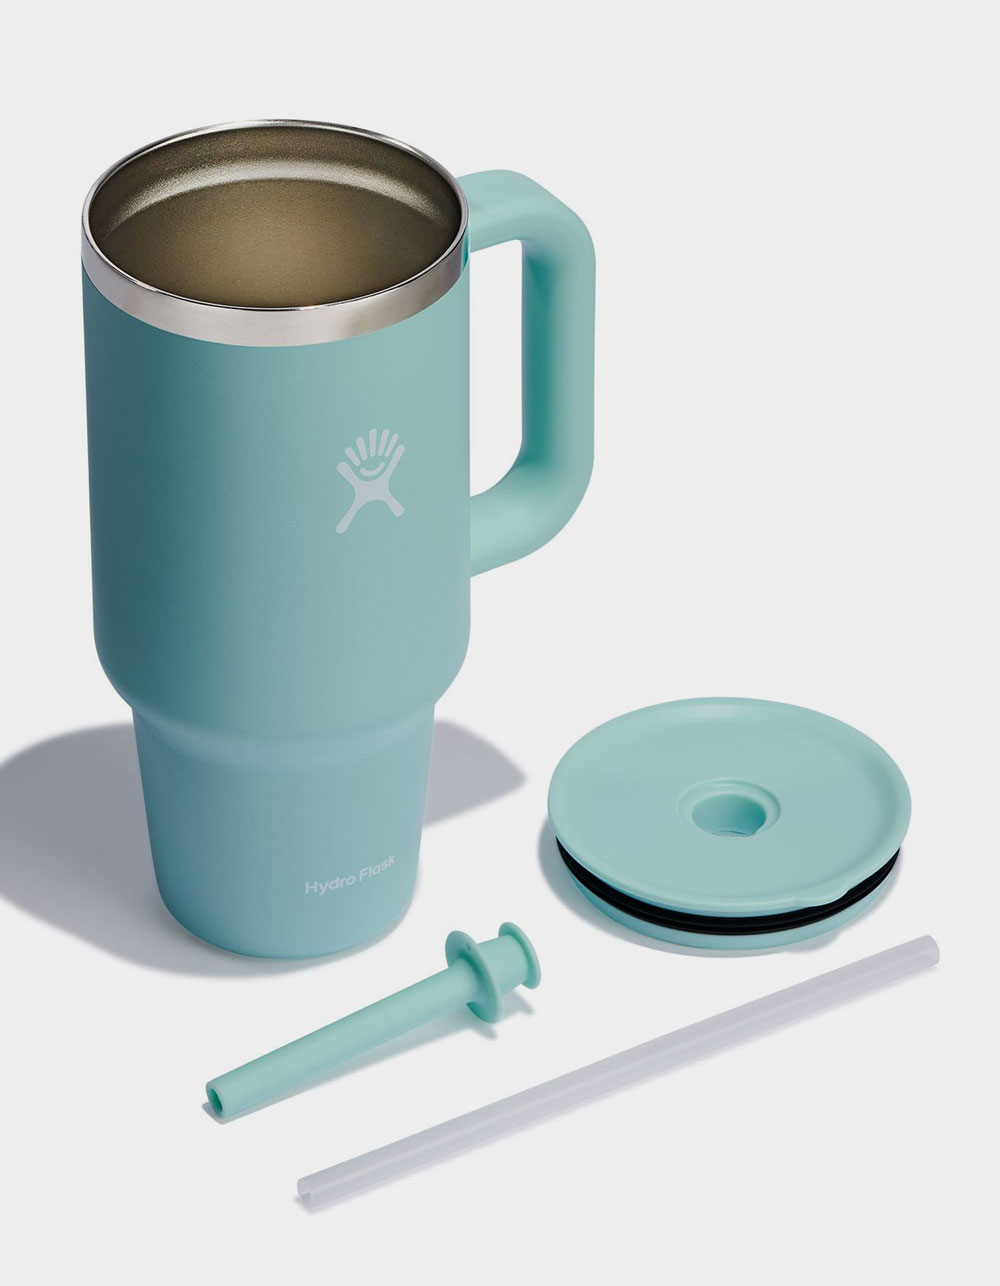 Hydro Flask 2 in Coffee Mugs